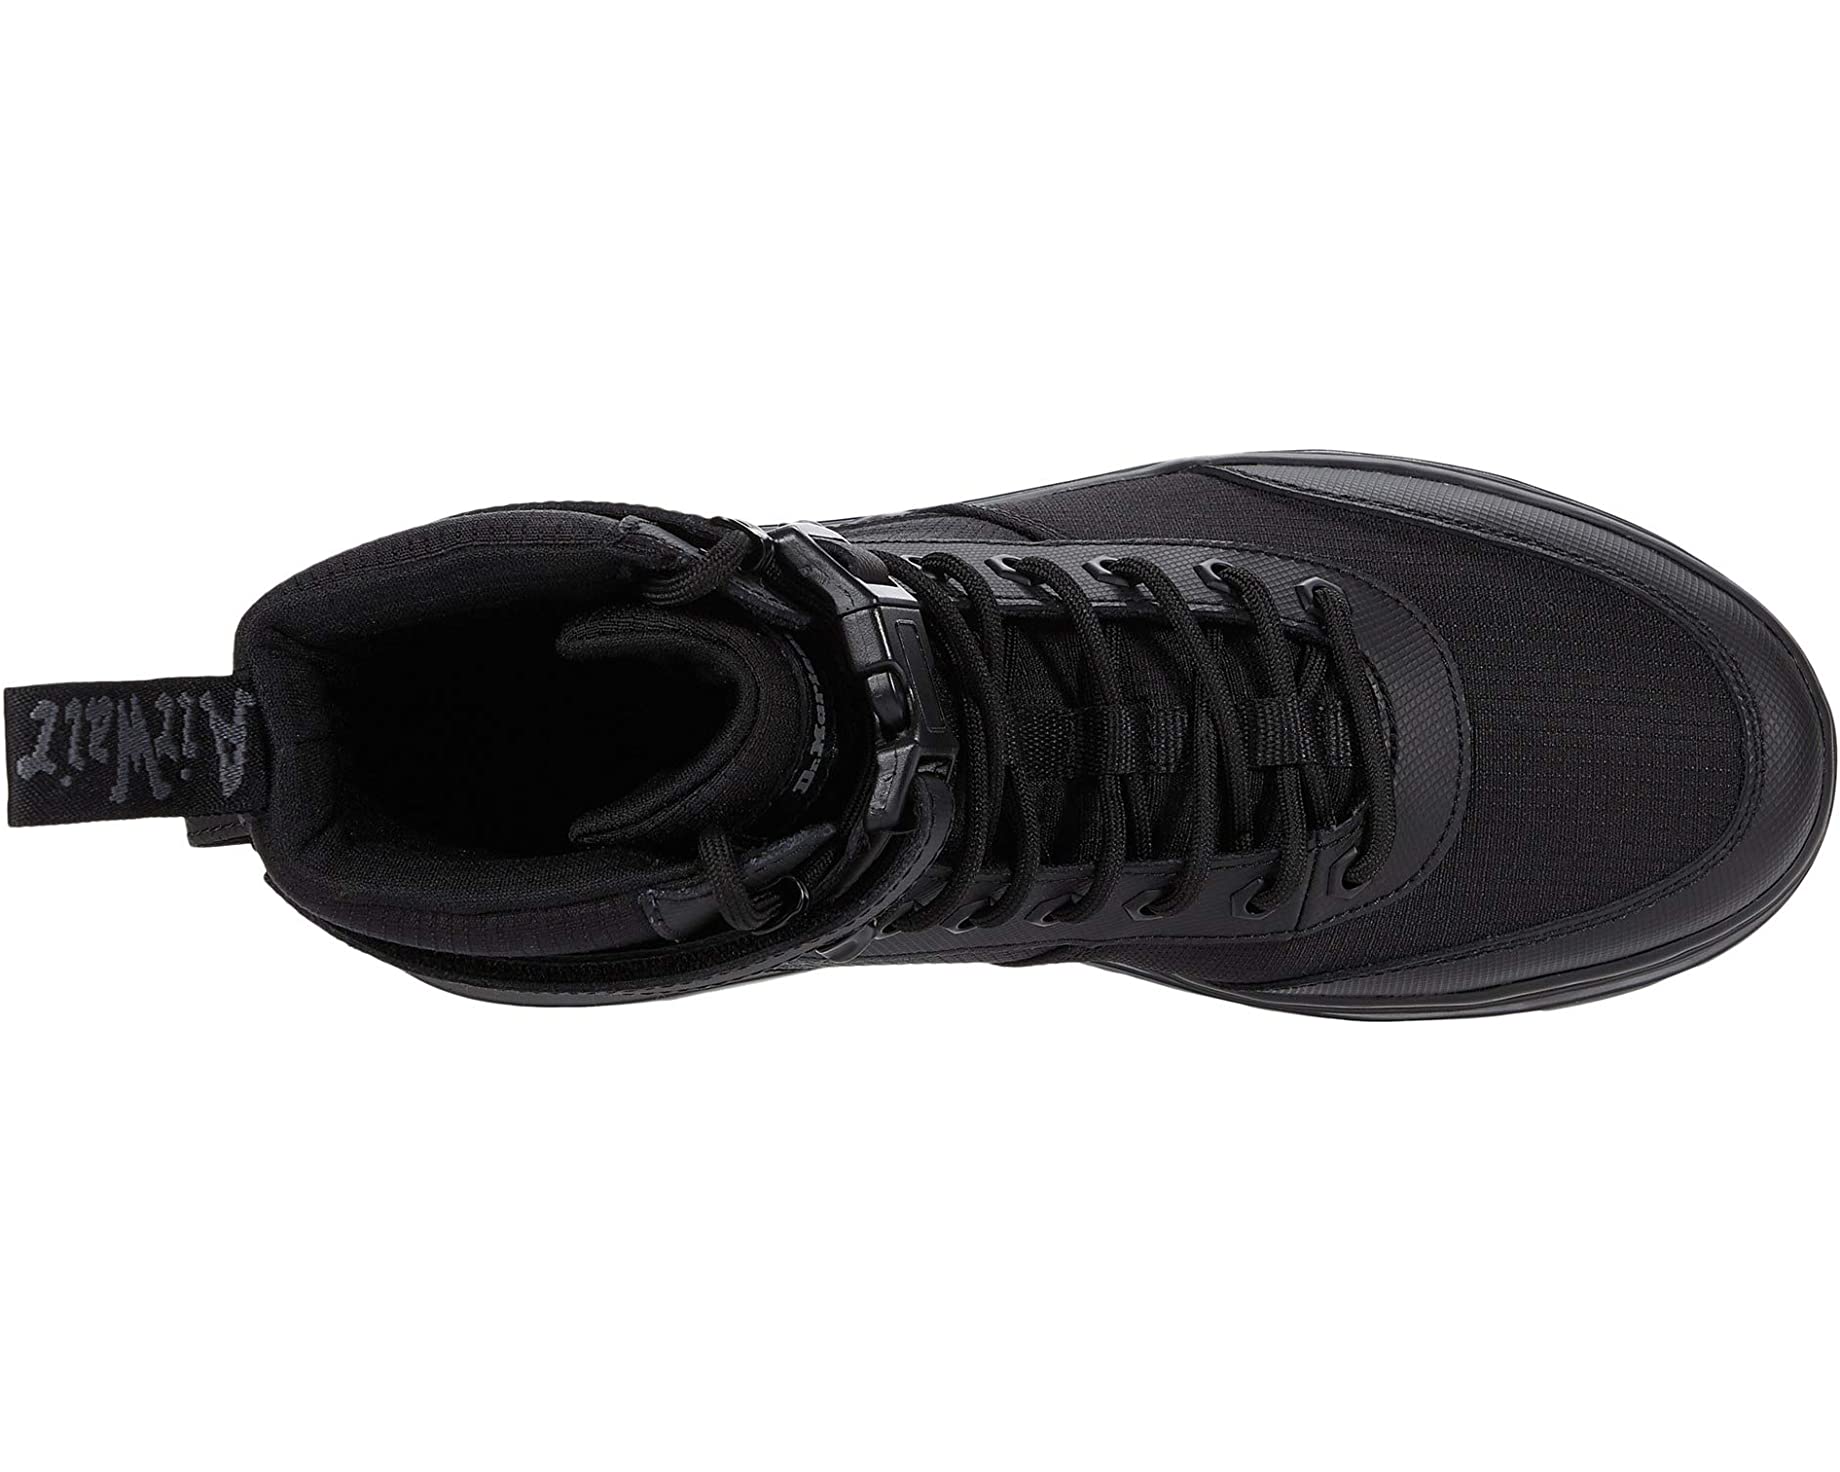 Ботинки Combs Tech Dr. Martens, черный ботинки dr martens combs темно коричневый черный